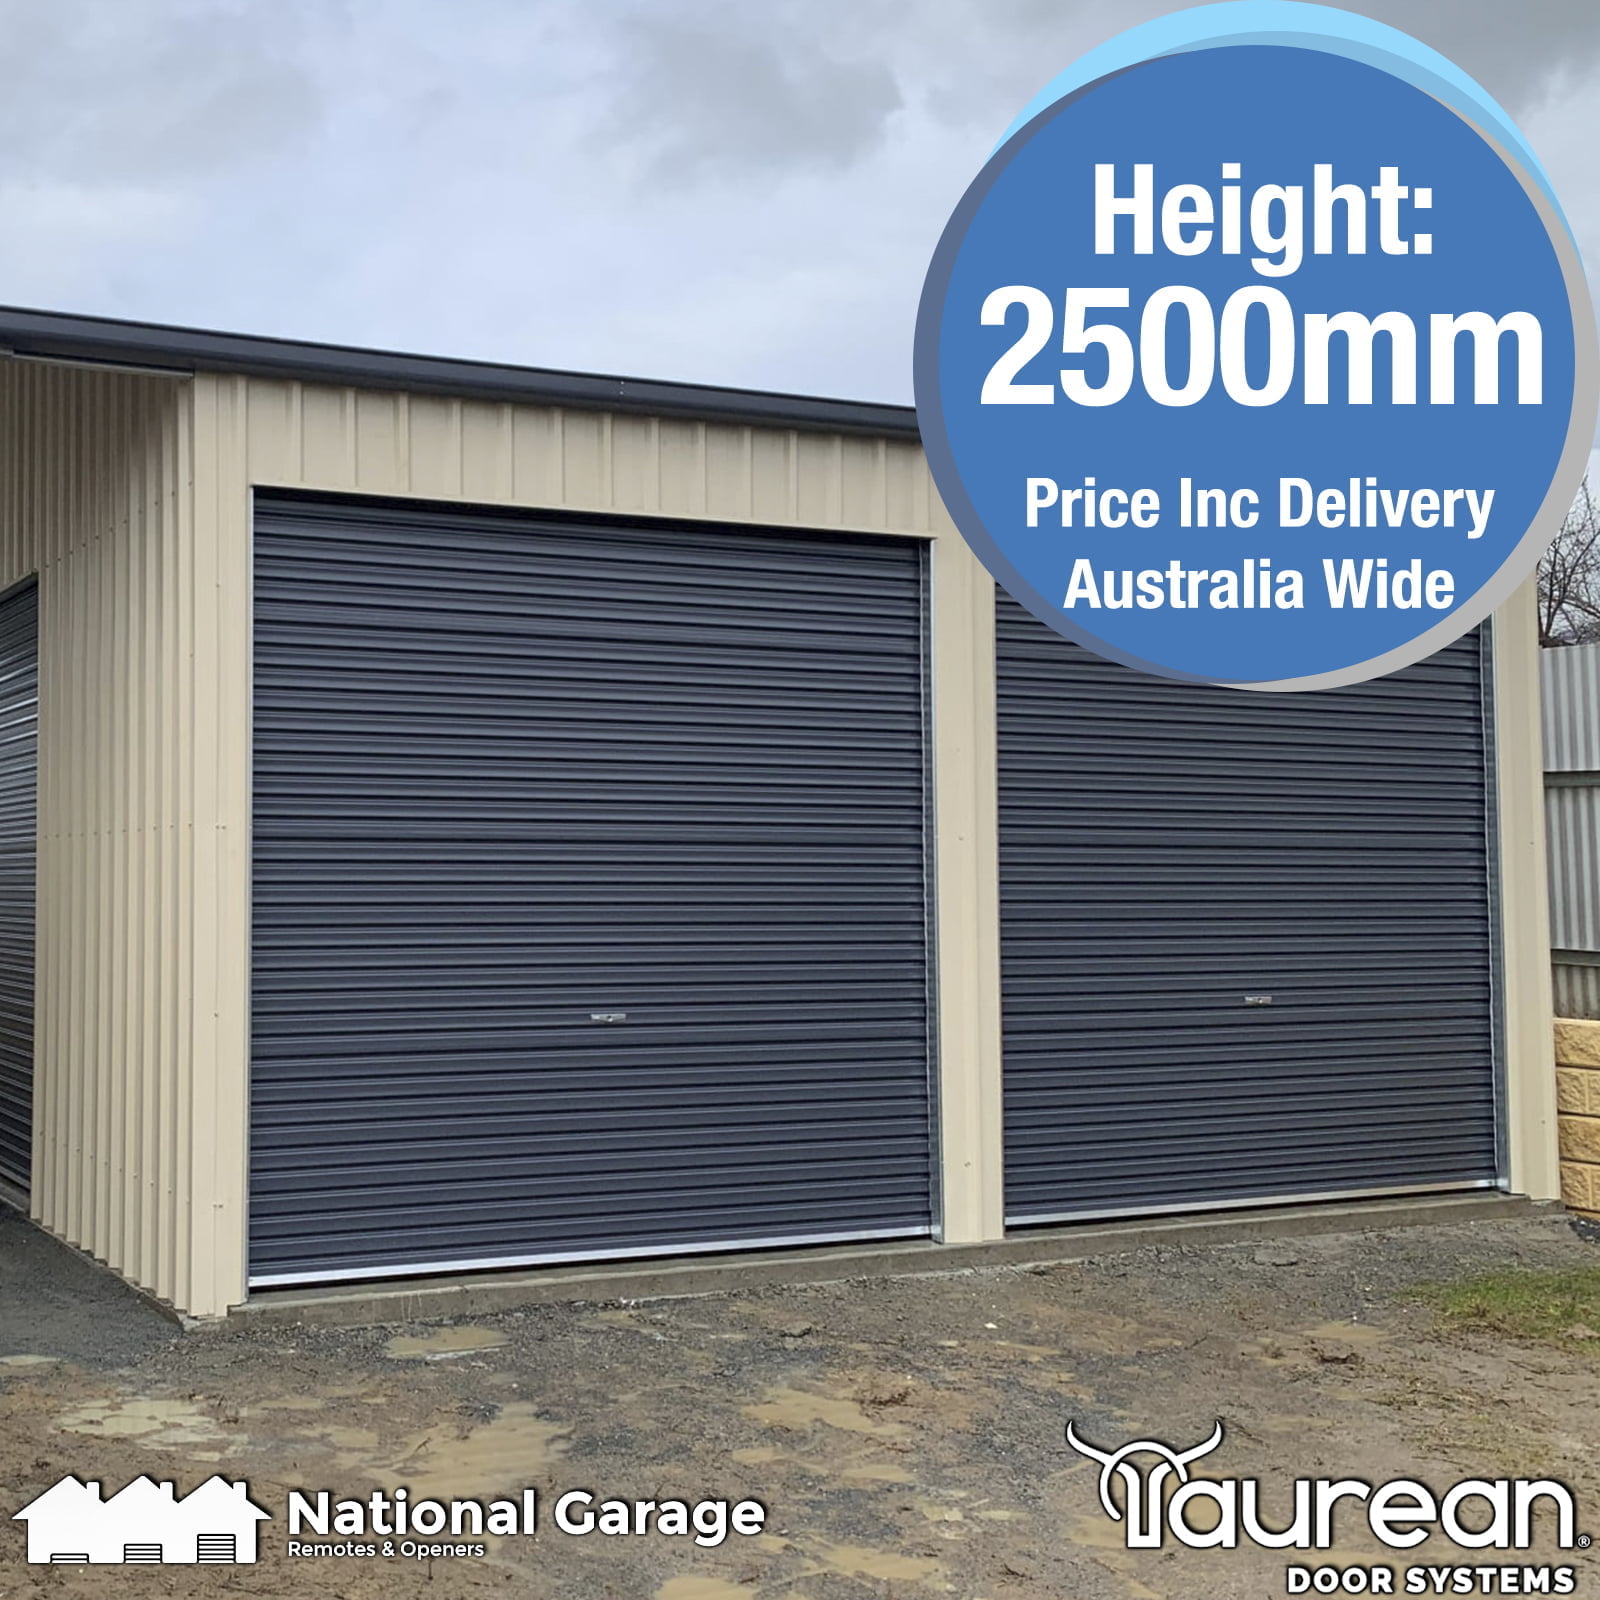 48 Ammar Garage door opener prices australia New Castle